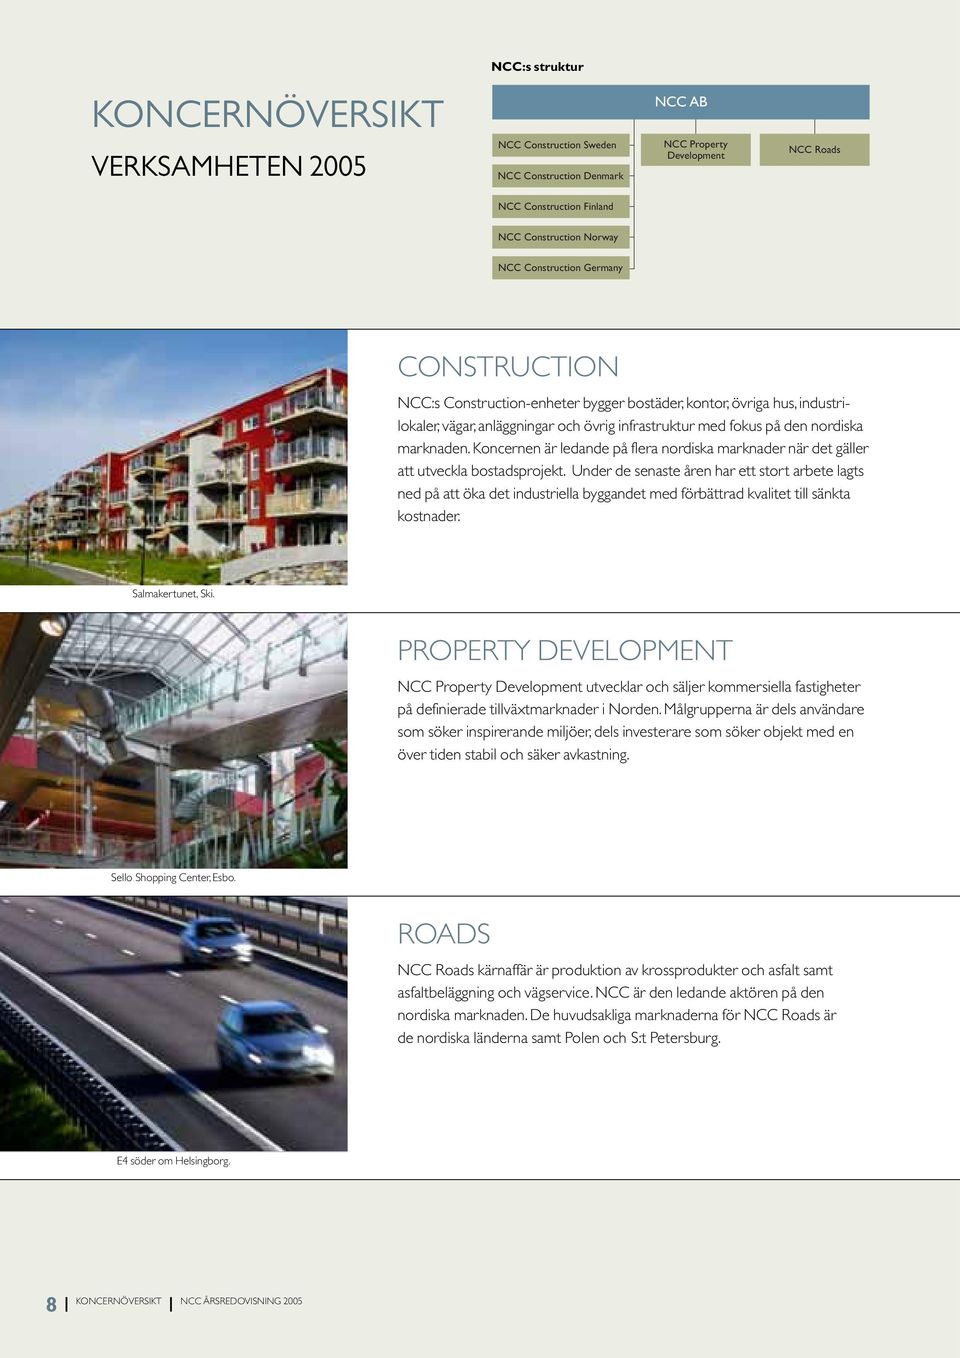 Koncernen är ledande på flera nordiska marknader när det gäller att utveckla bostadsprojekt.